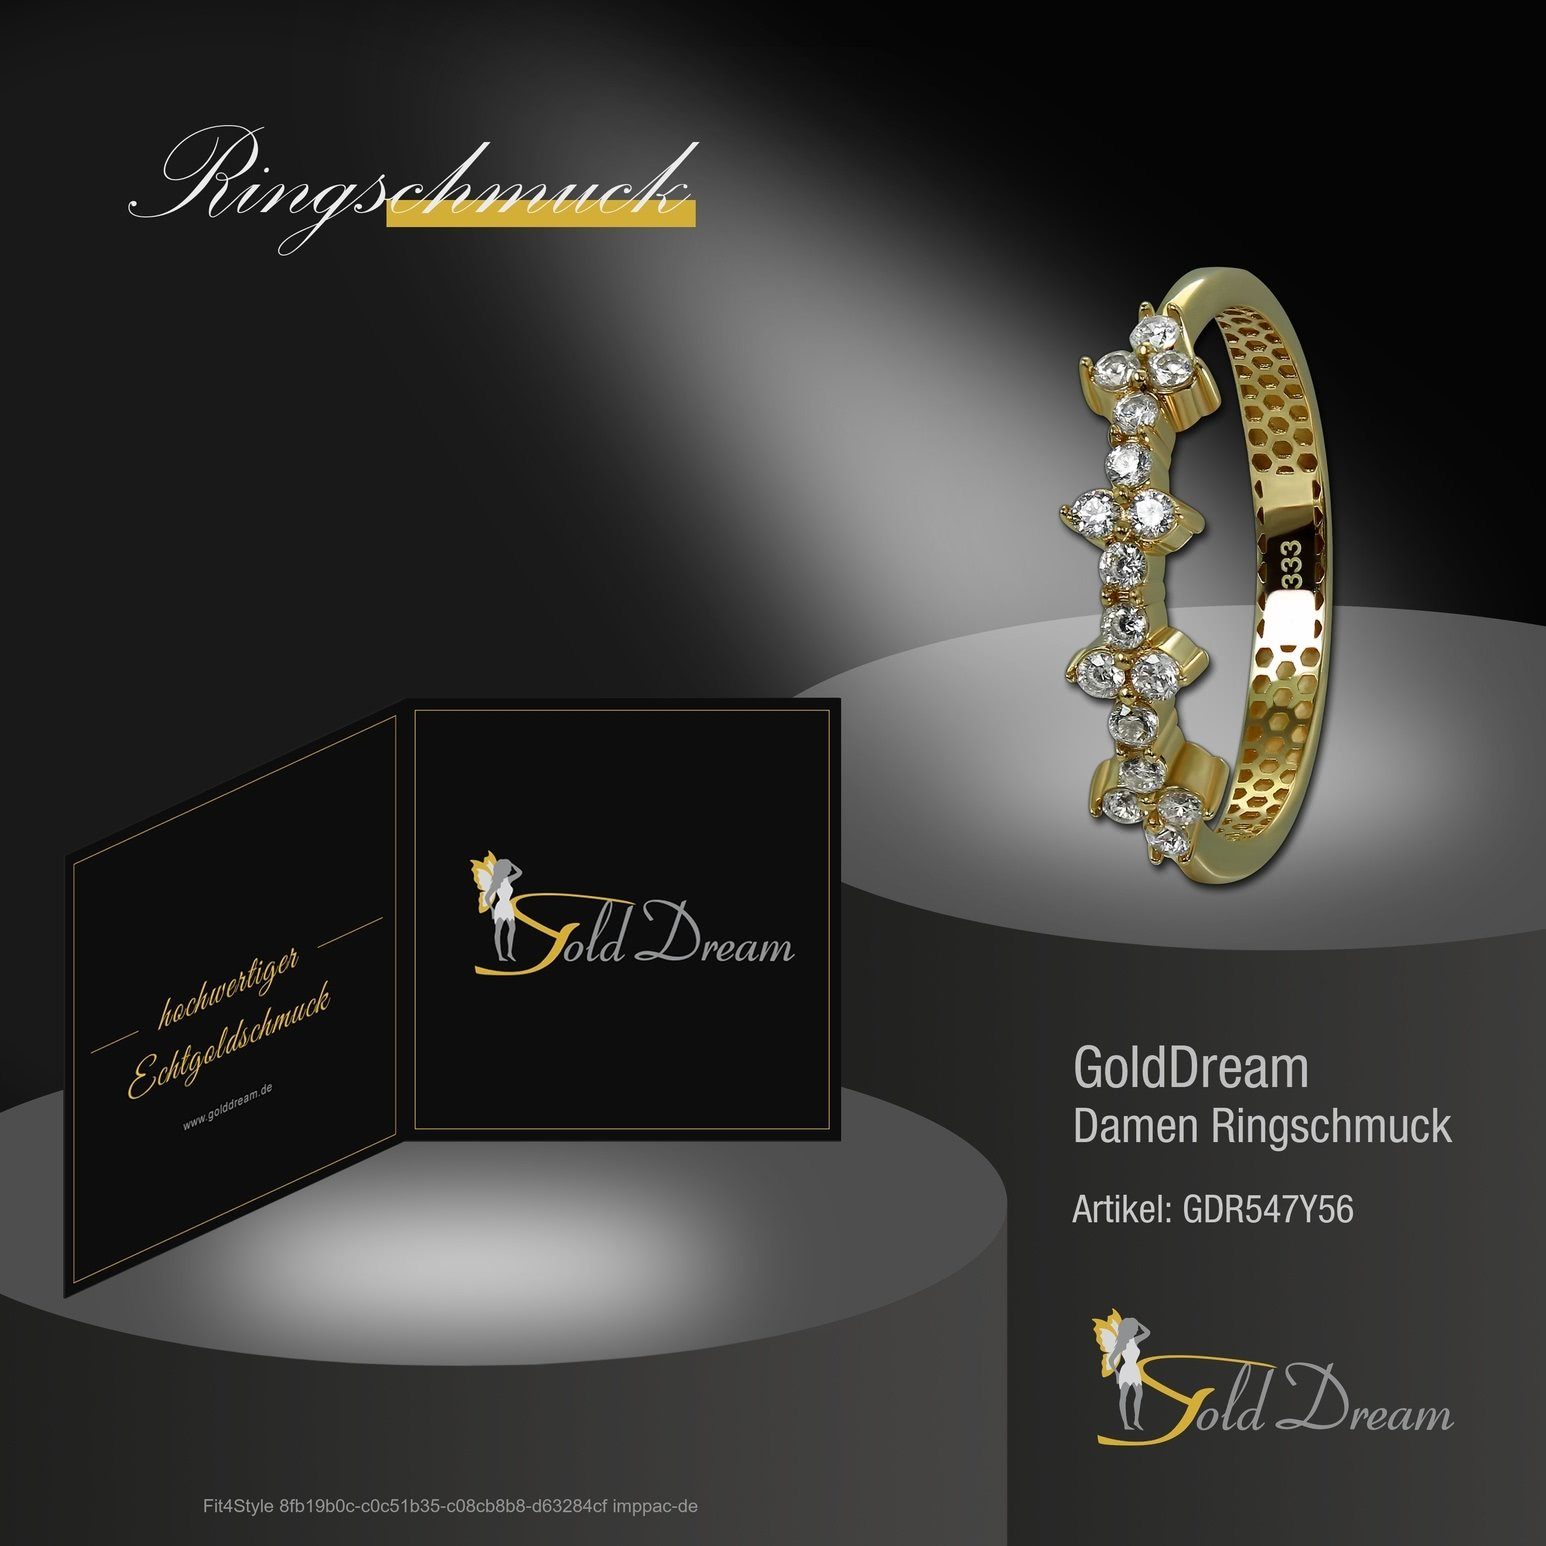 Goldring GoldDream 8 Gr.56 Gold Blümchen - (Fingerring), Ring 333 weiß Karat, gold, Farbe: Blümchen Damen Ring GoldDream Gelbgold